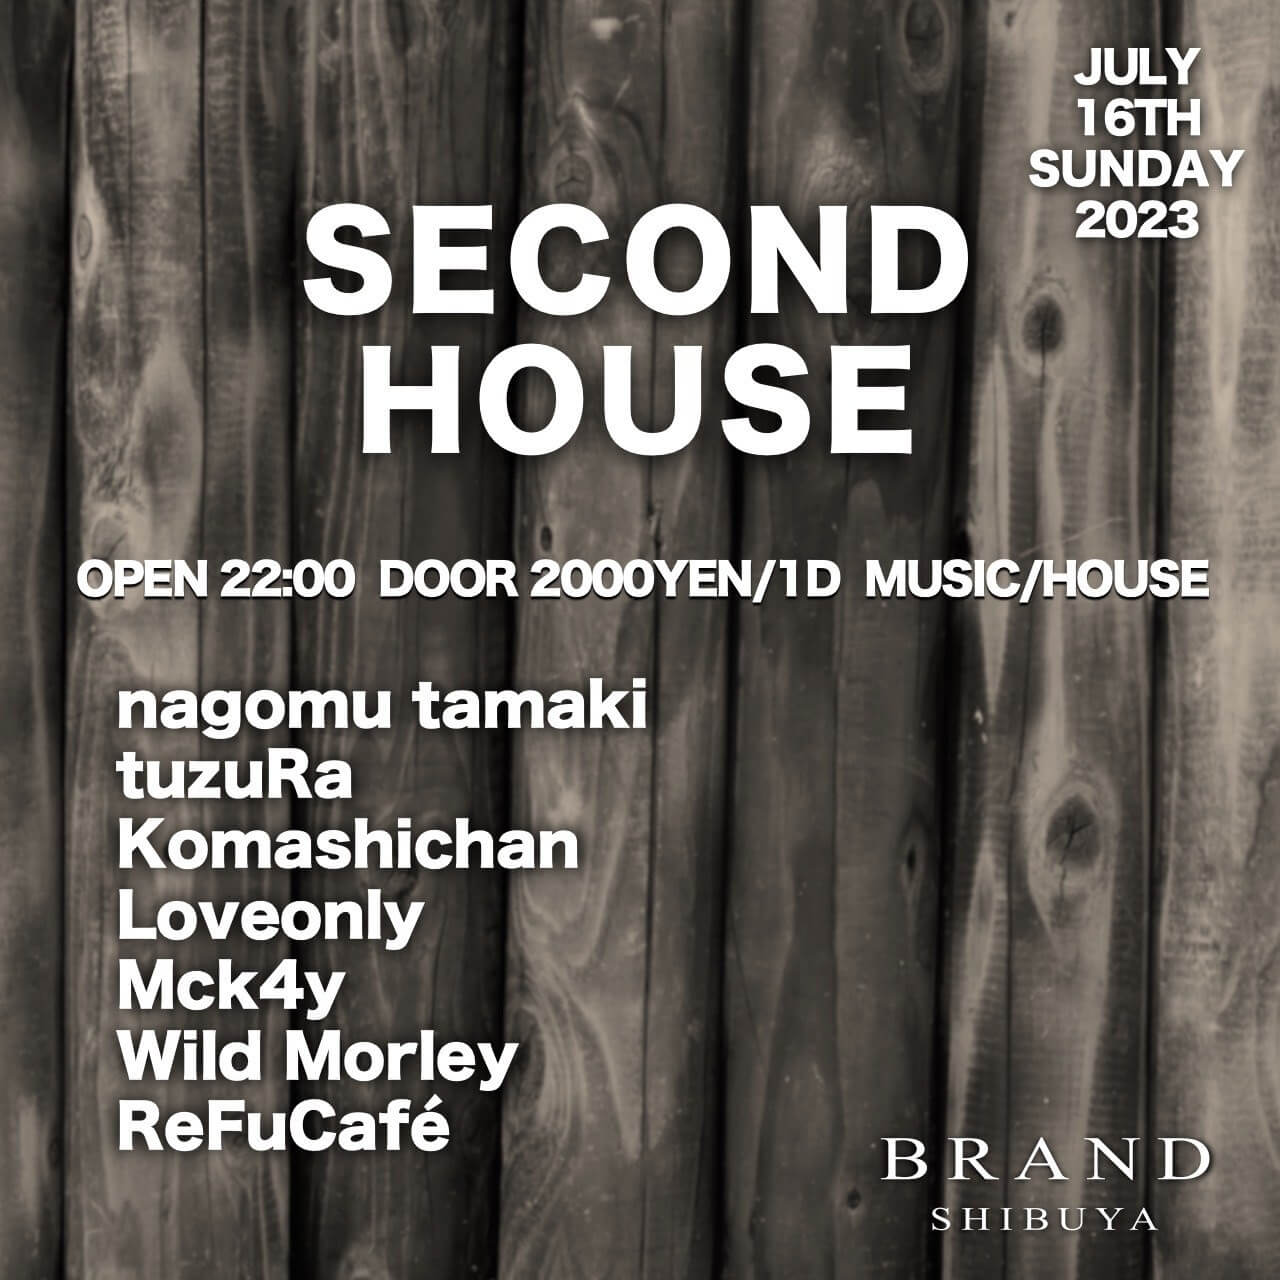 SECOND HOUSE 2023年07月16日（日曜日）に渋谷 クラブのBRAND SHIBUYAで開催されるHOUSEイベント